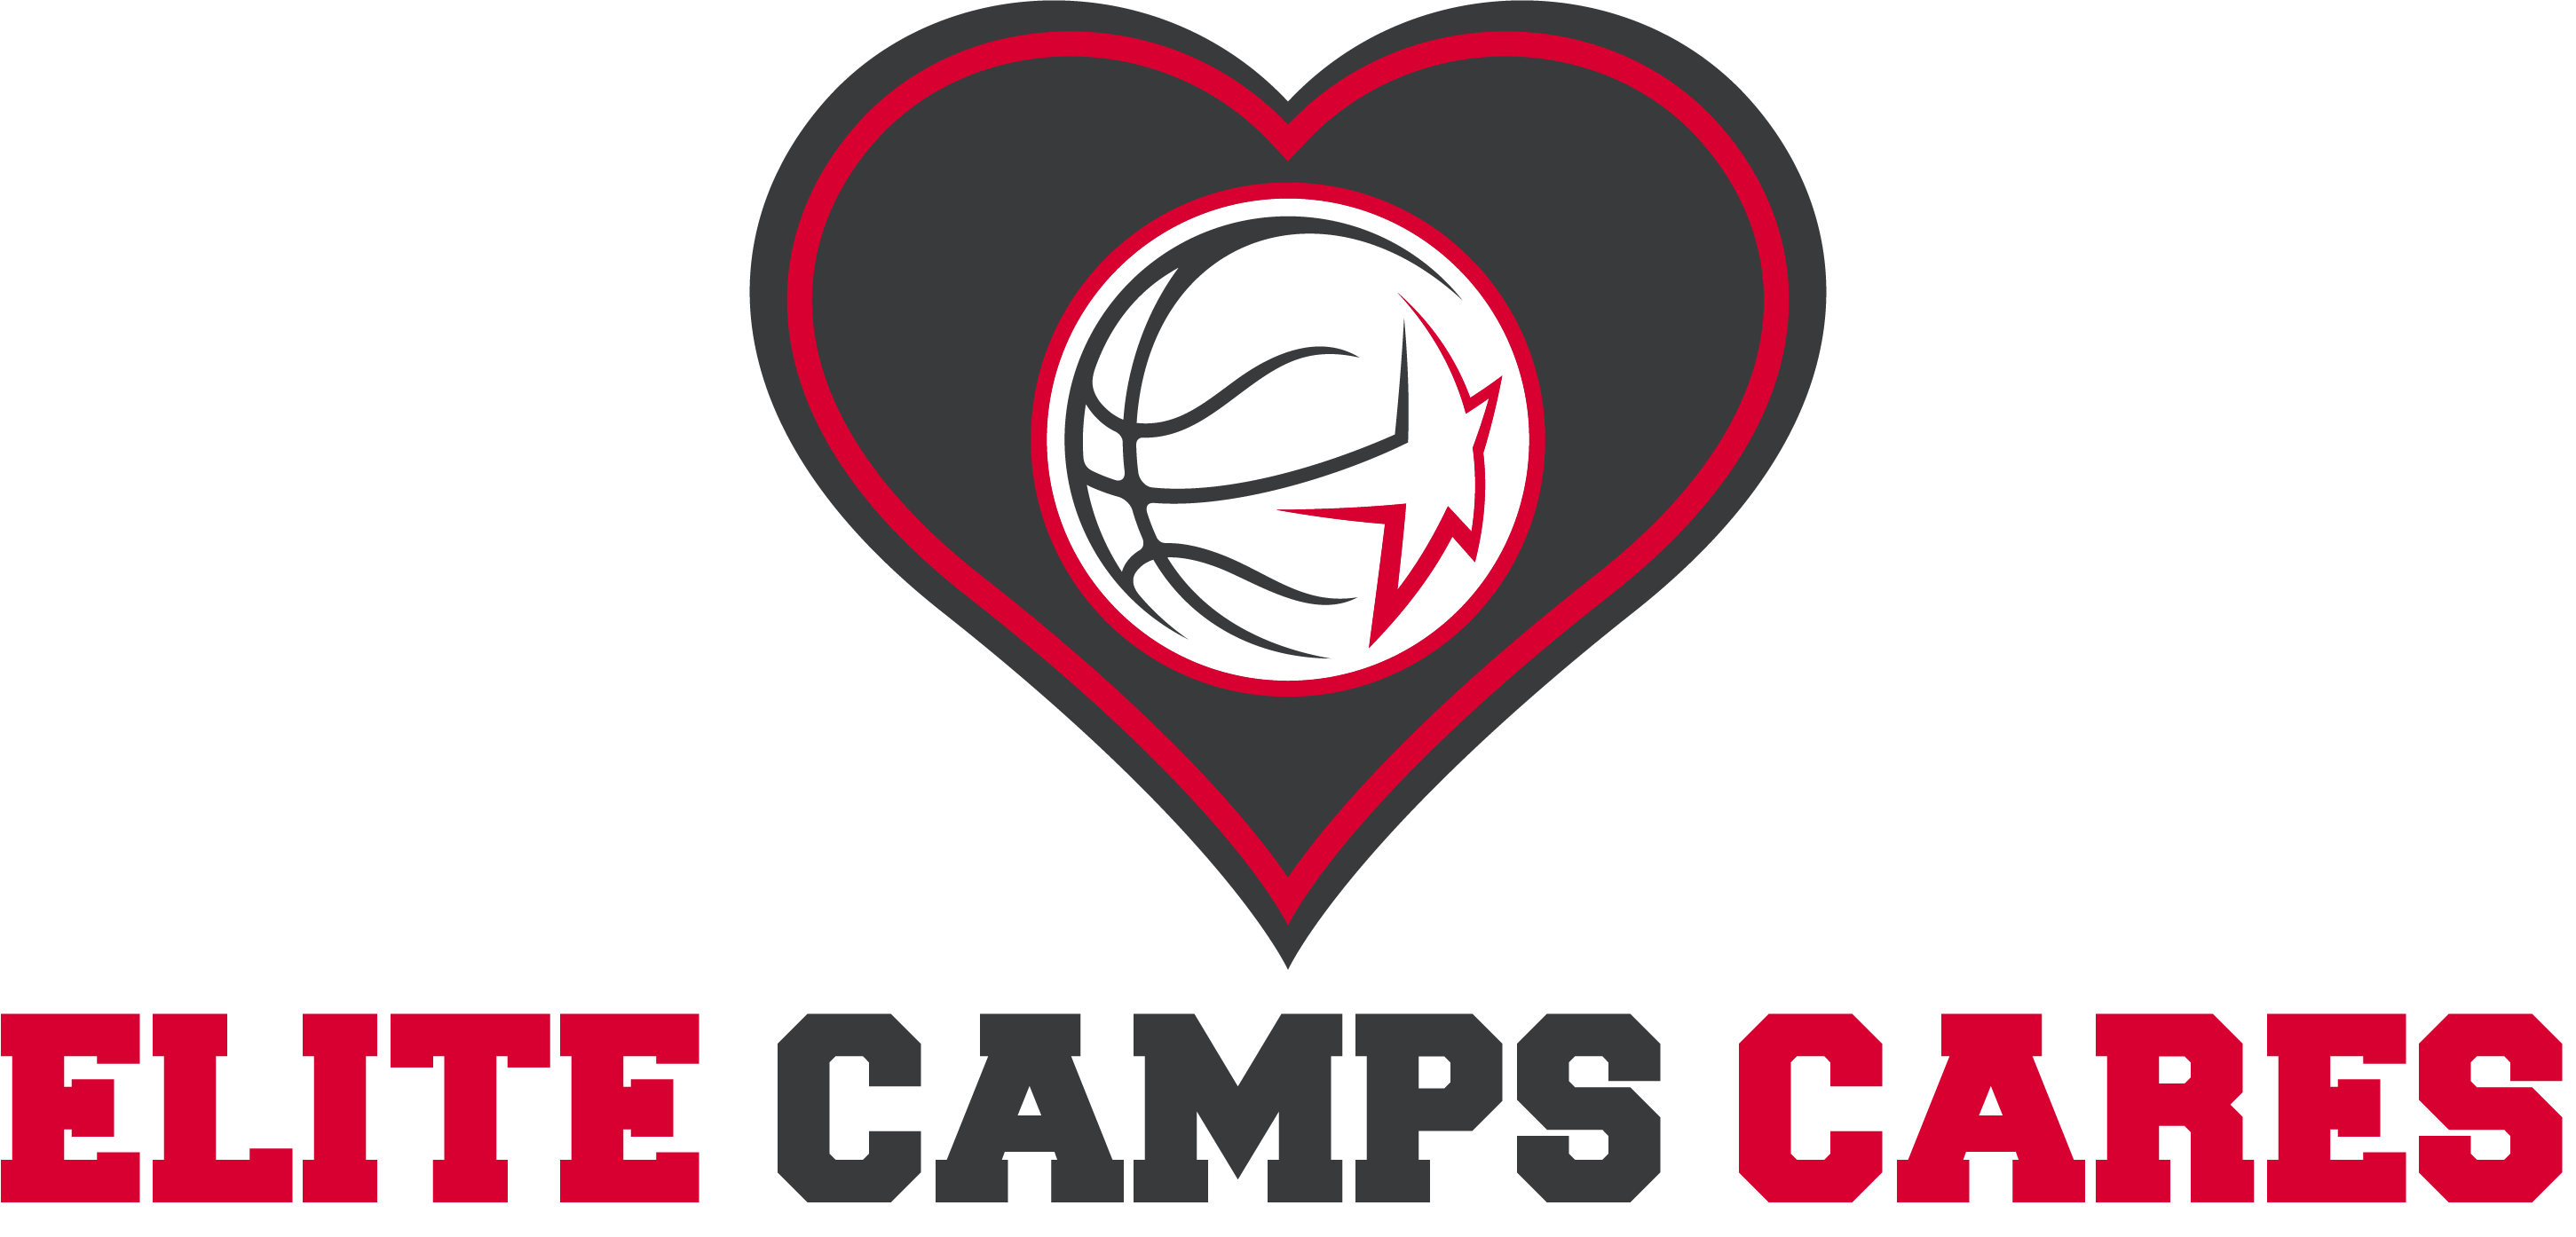 Elite Camps Cares logo